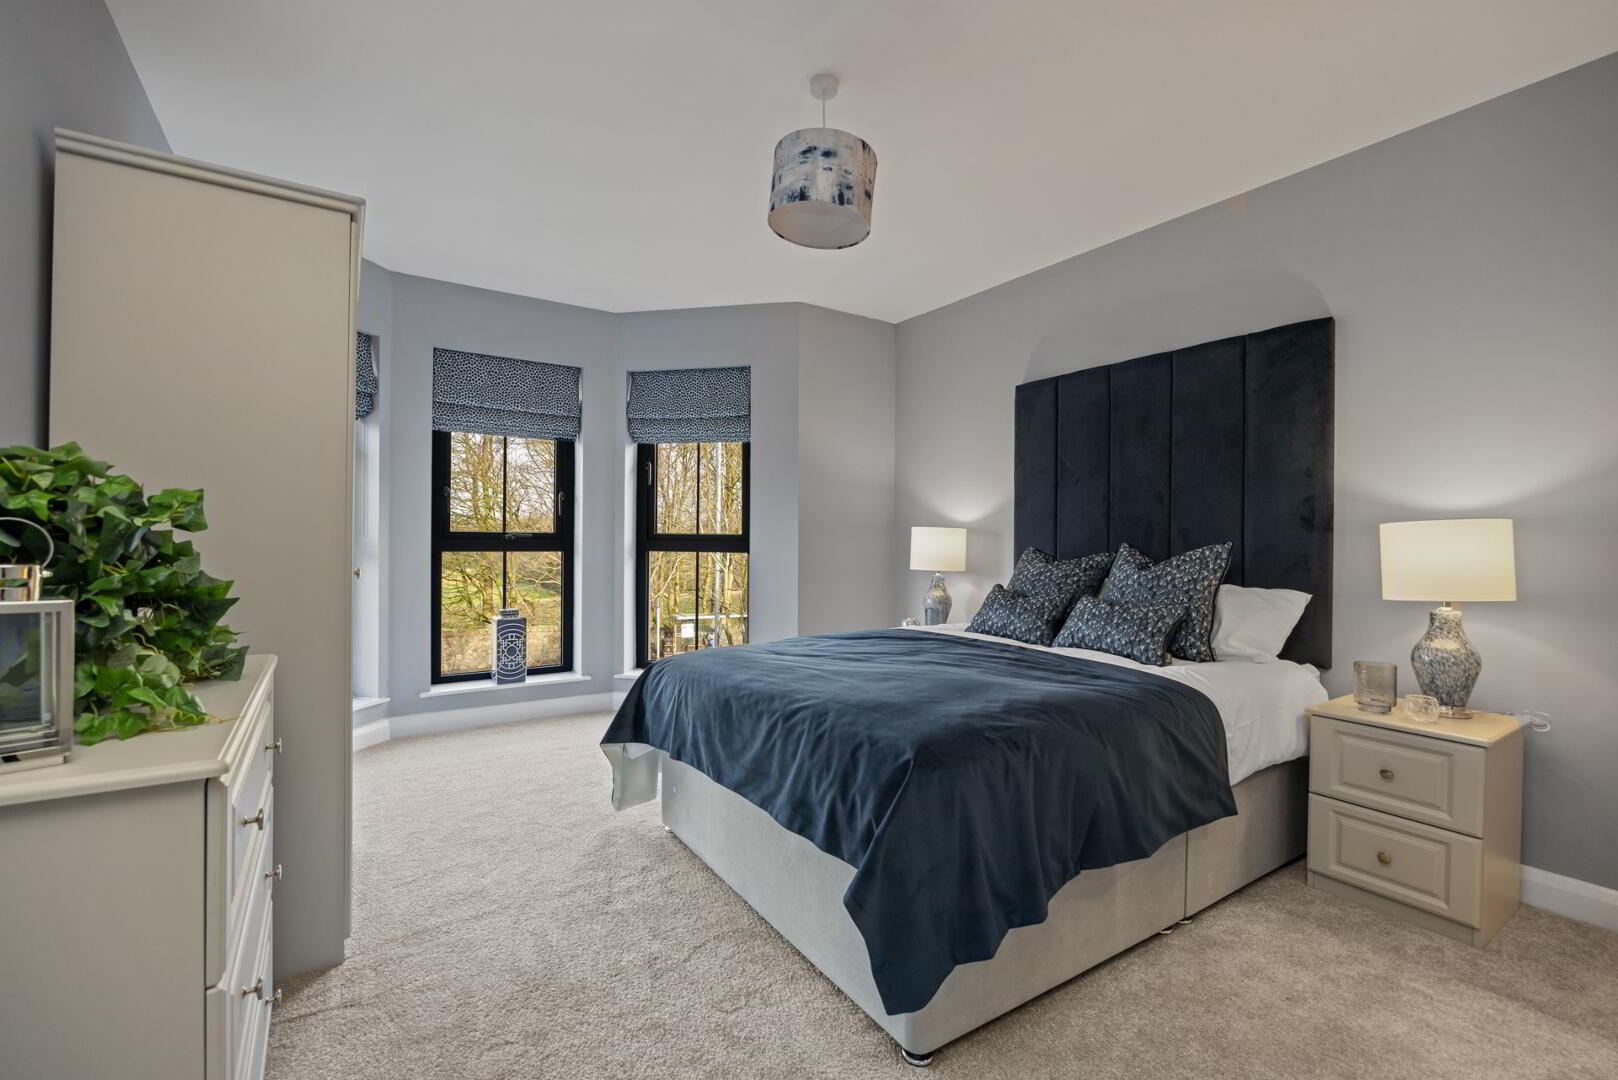 Bedroom Design Blakely Interiors Northern Ireland